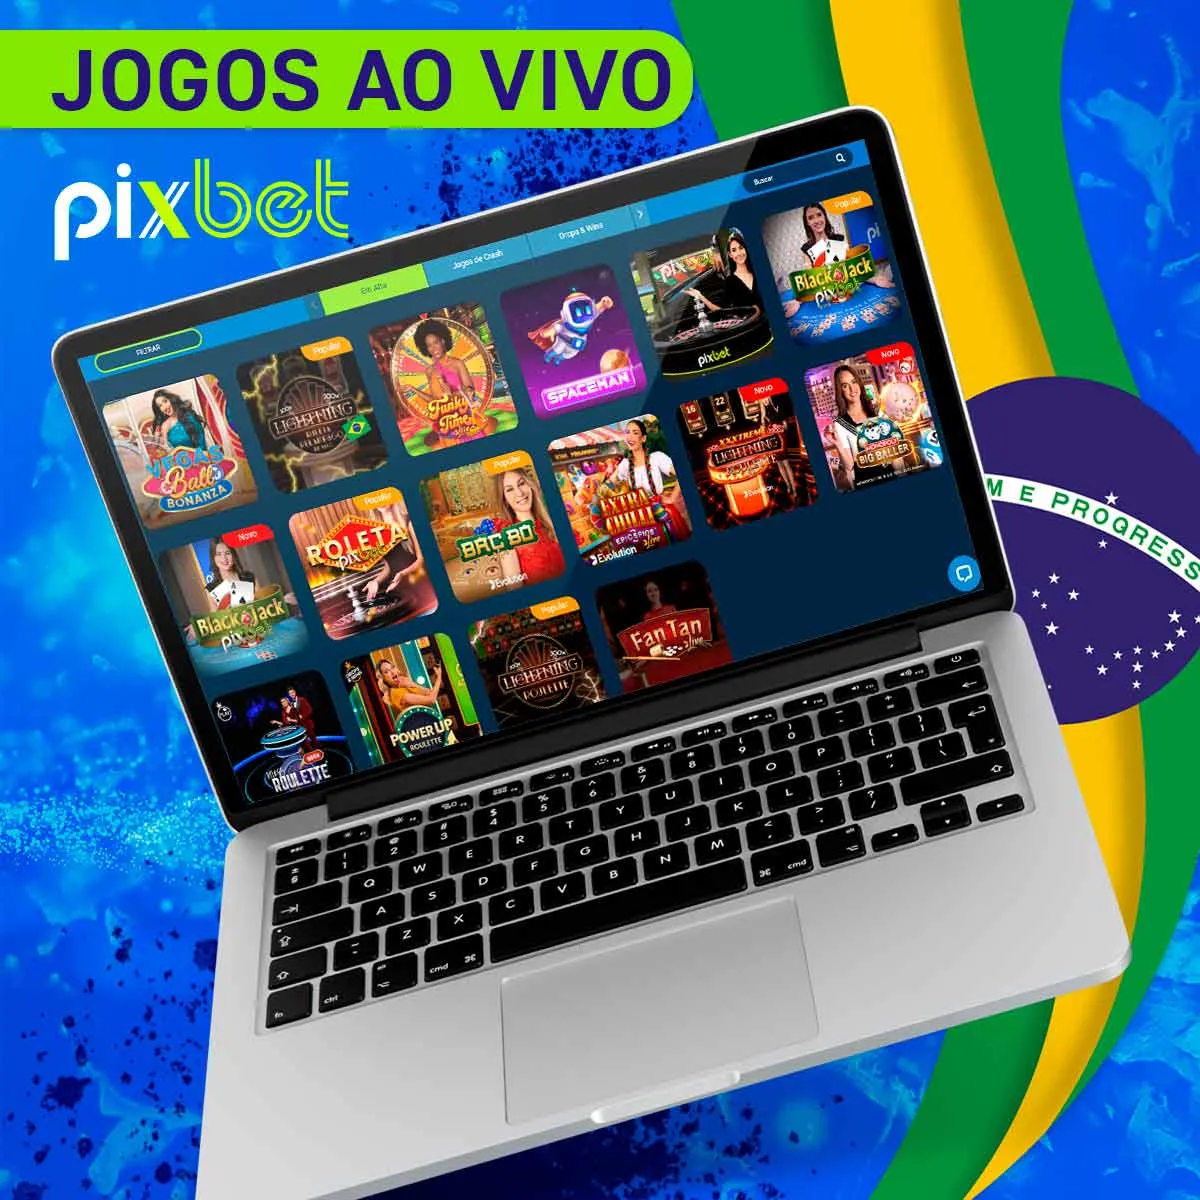 Jogos ao vivo popular na casa de apostas Pixbet no Brasil